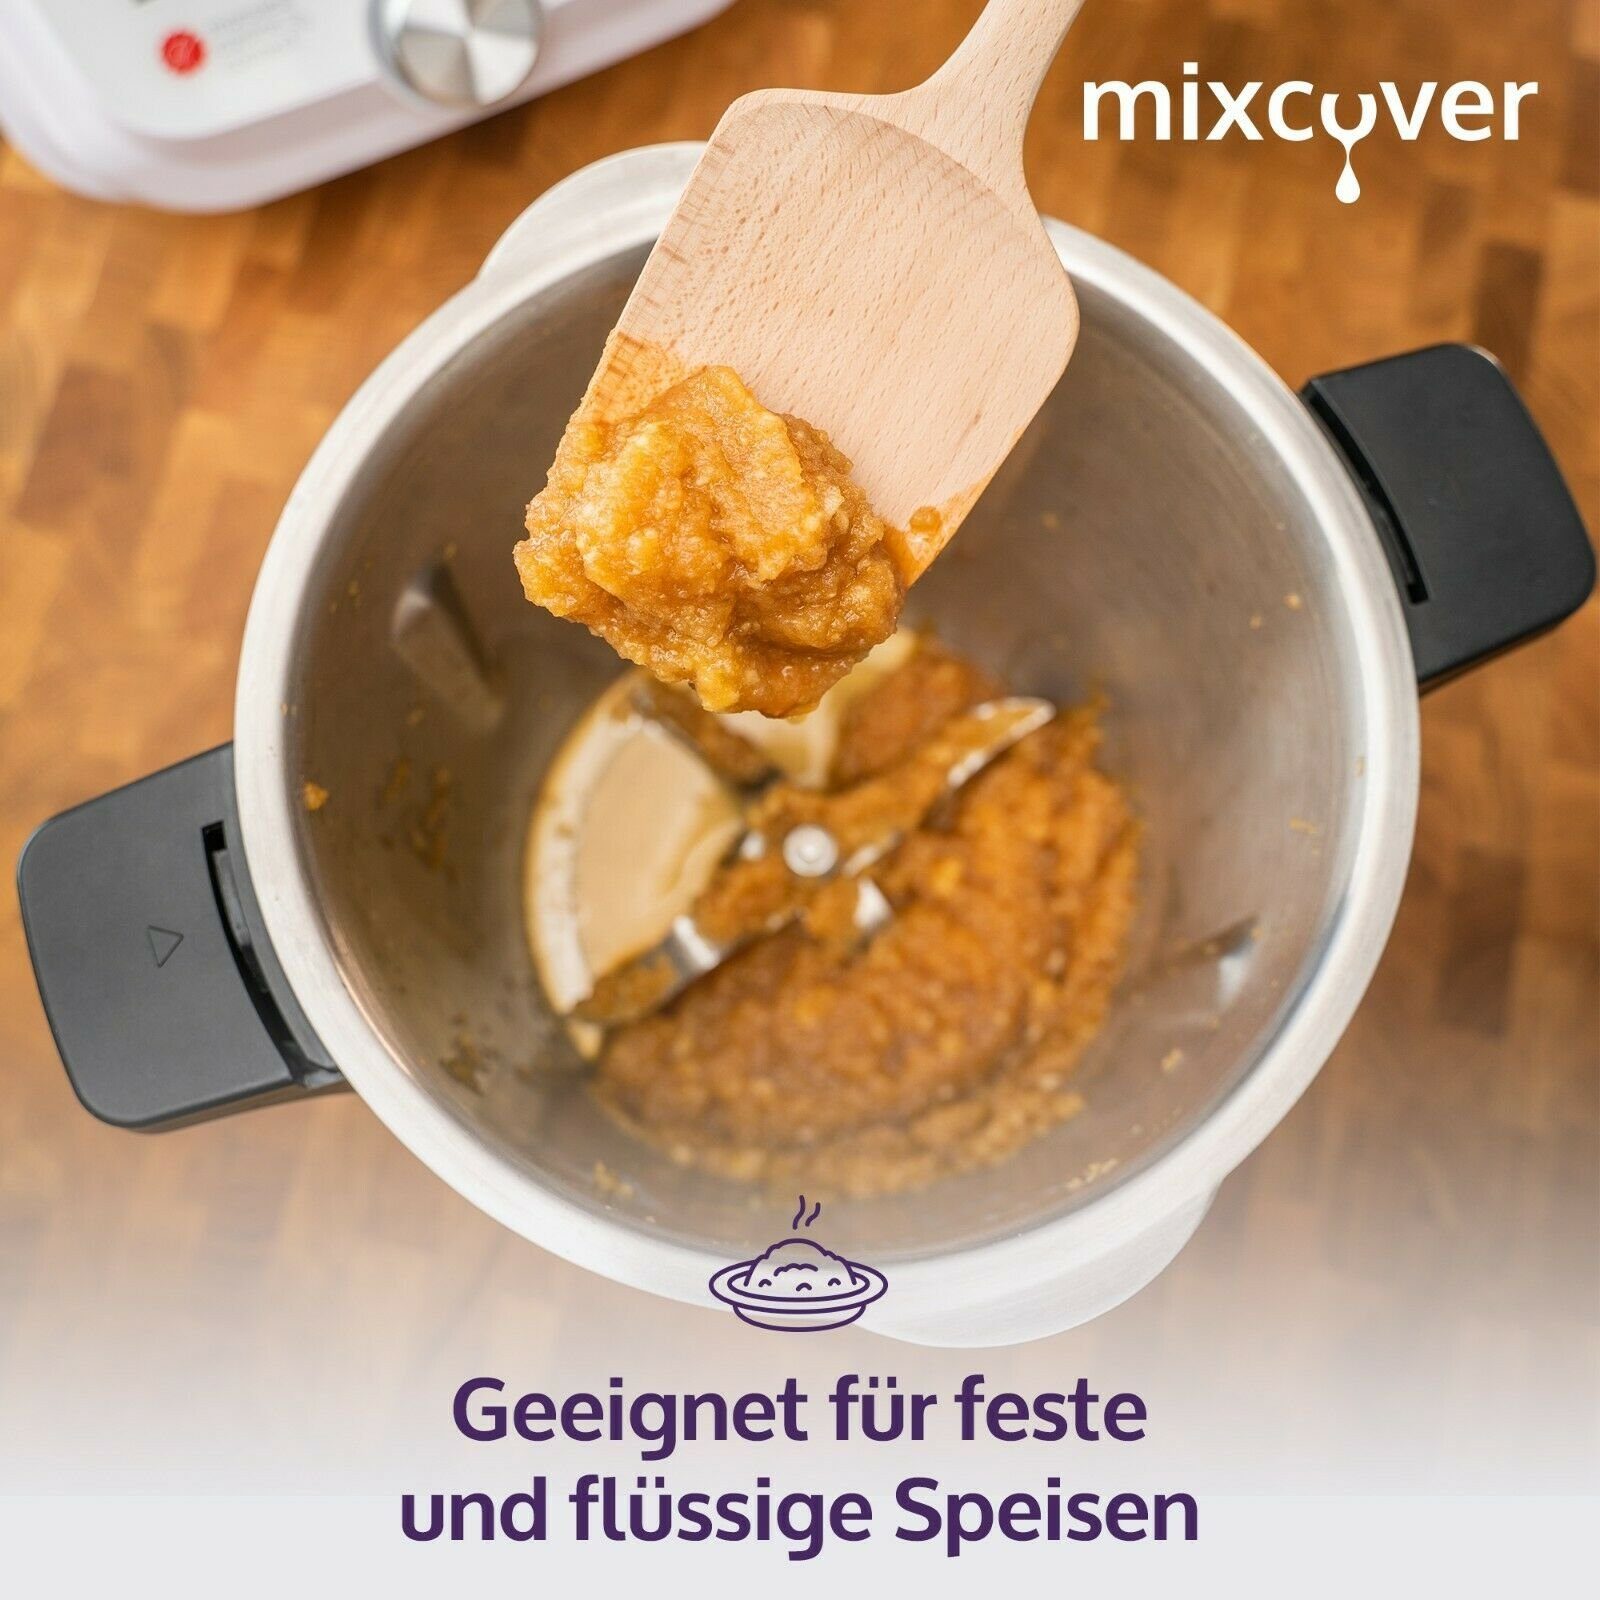 Smart Küchenmaschinen-Adapter & Nachhaltiger Mixcover Monsieur mixcover Zubehör Connect Holzspatel Cuisine